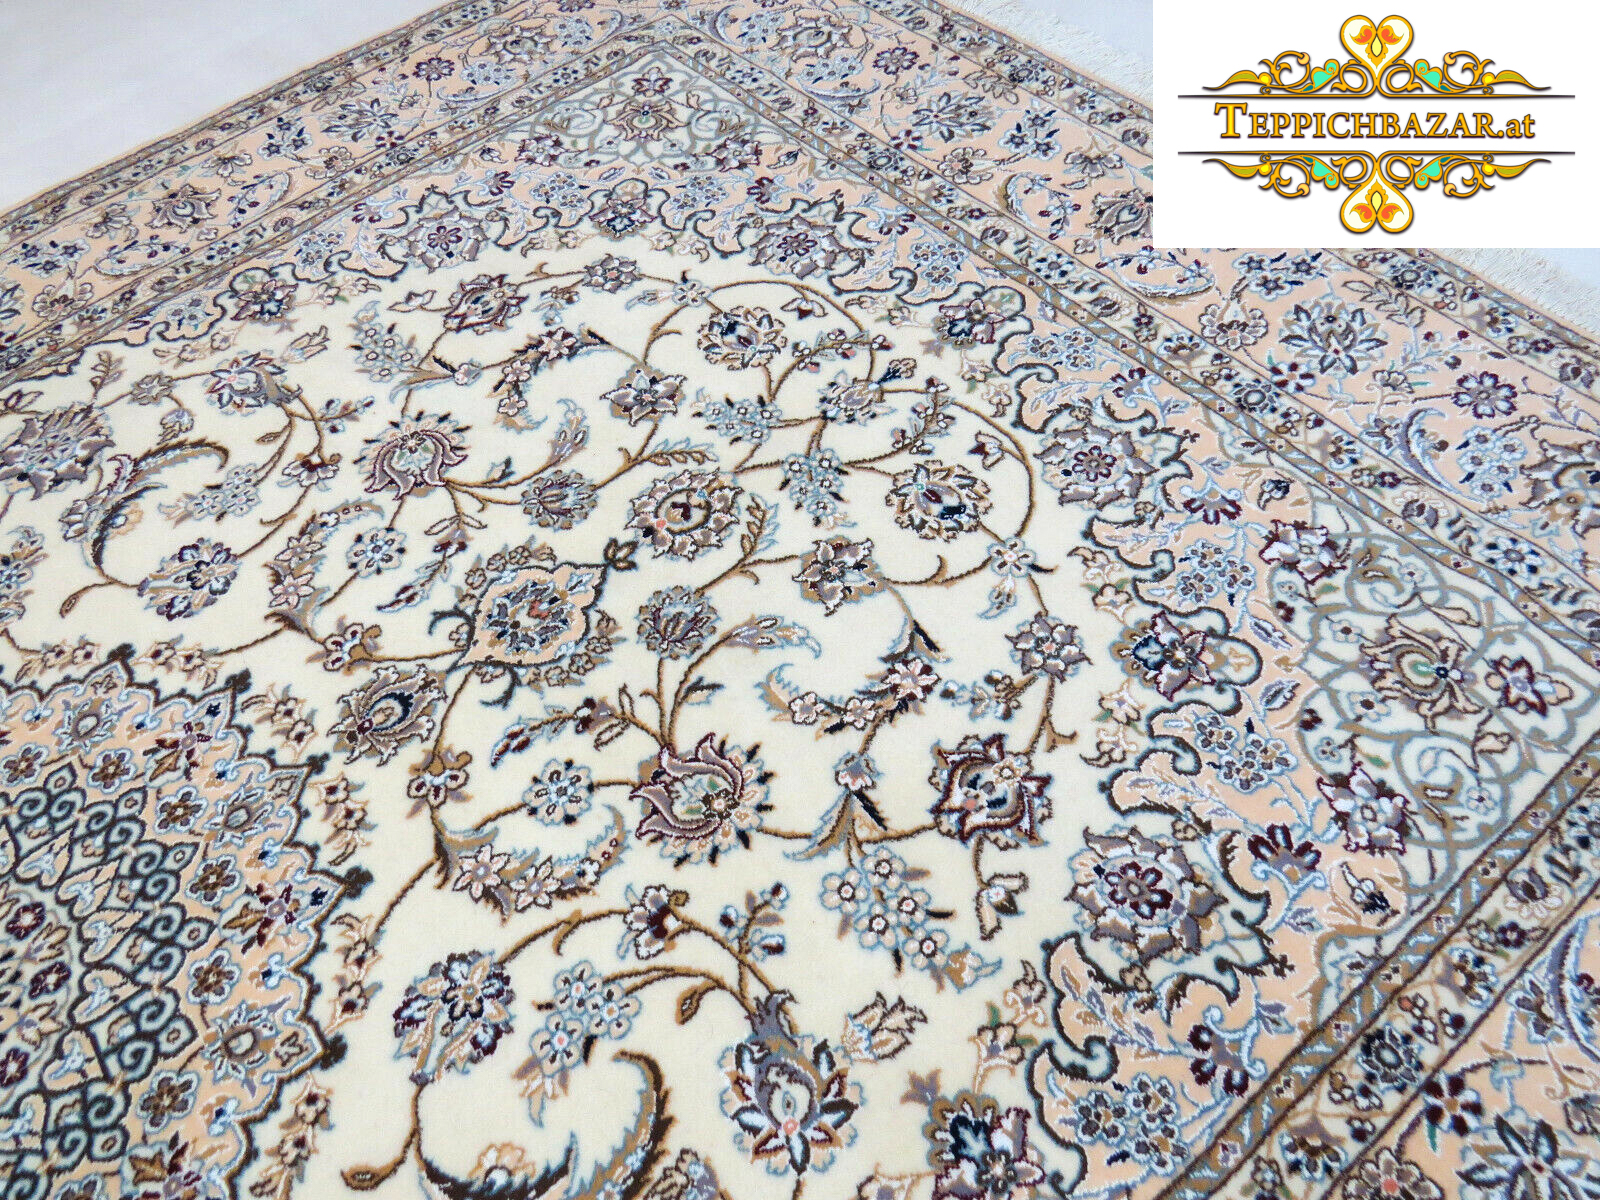 カーペット バザール - ペルシャ絨毯をオンラインで購入